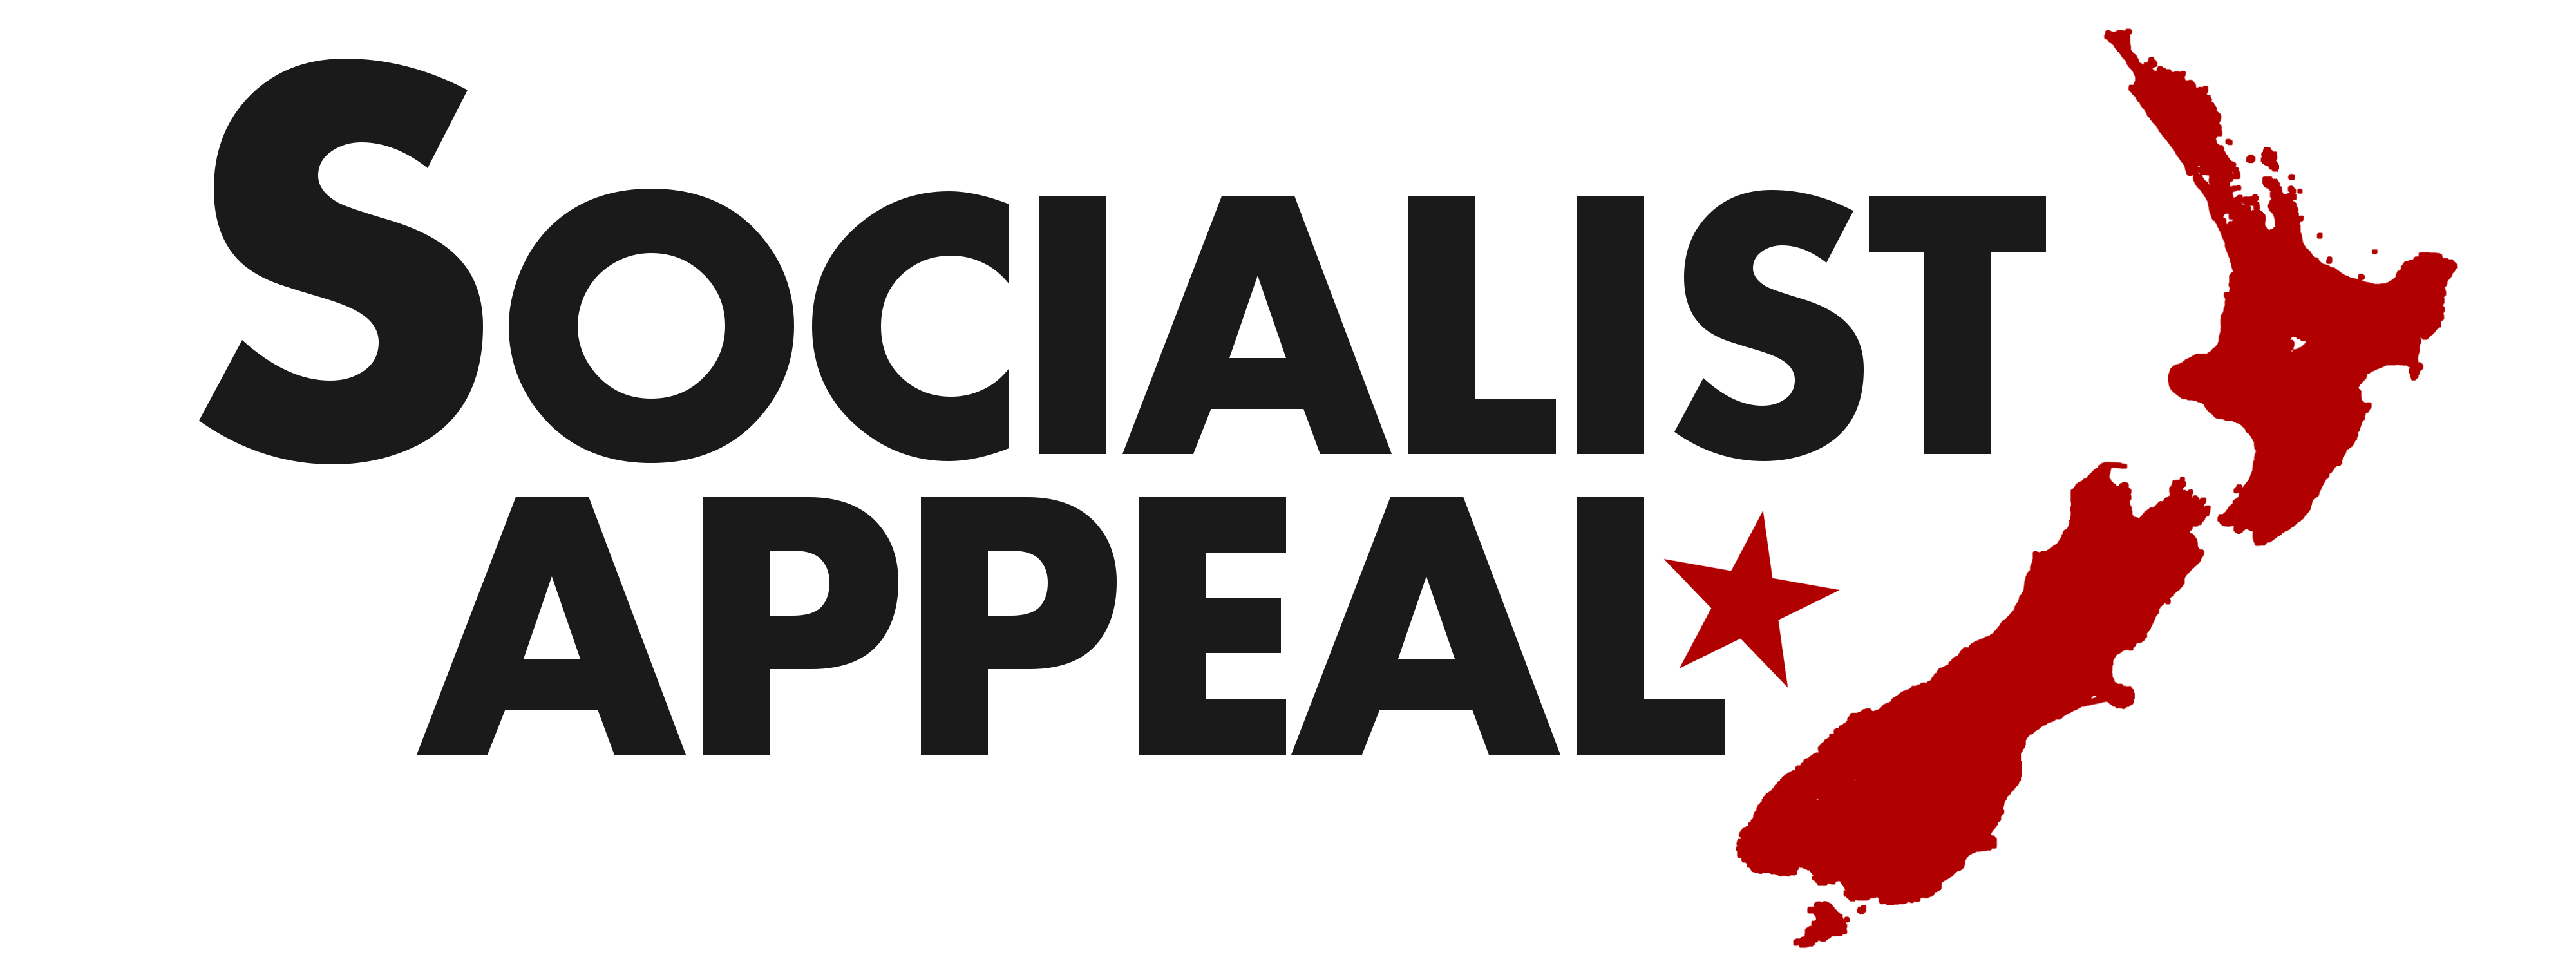 Socialist Appeal NZ